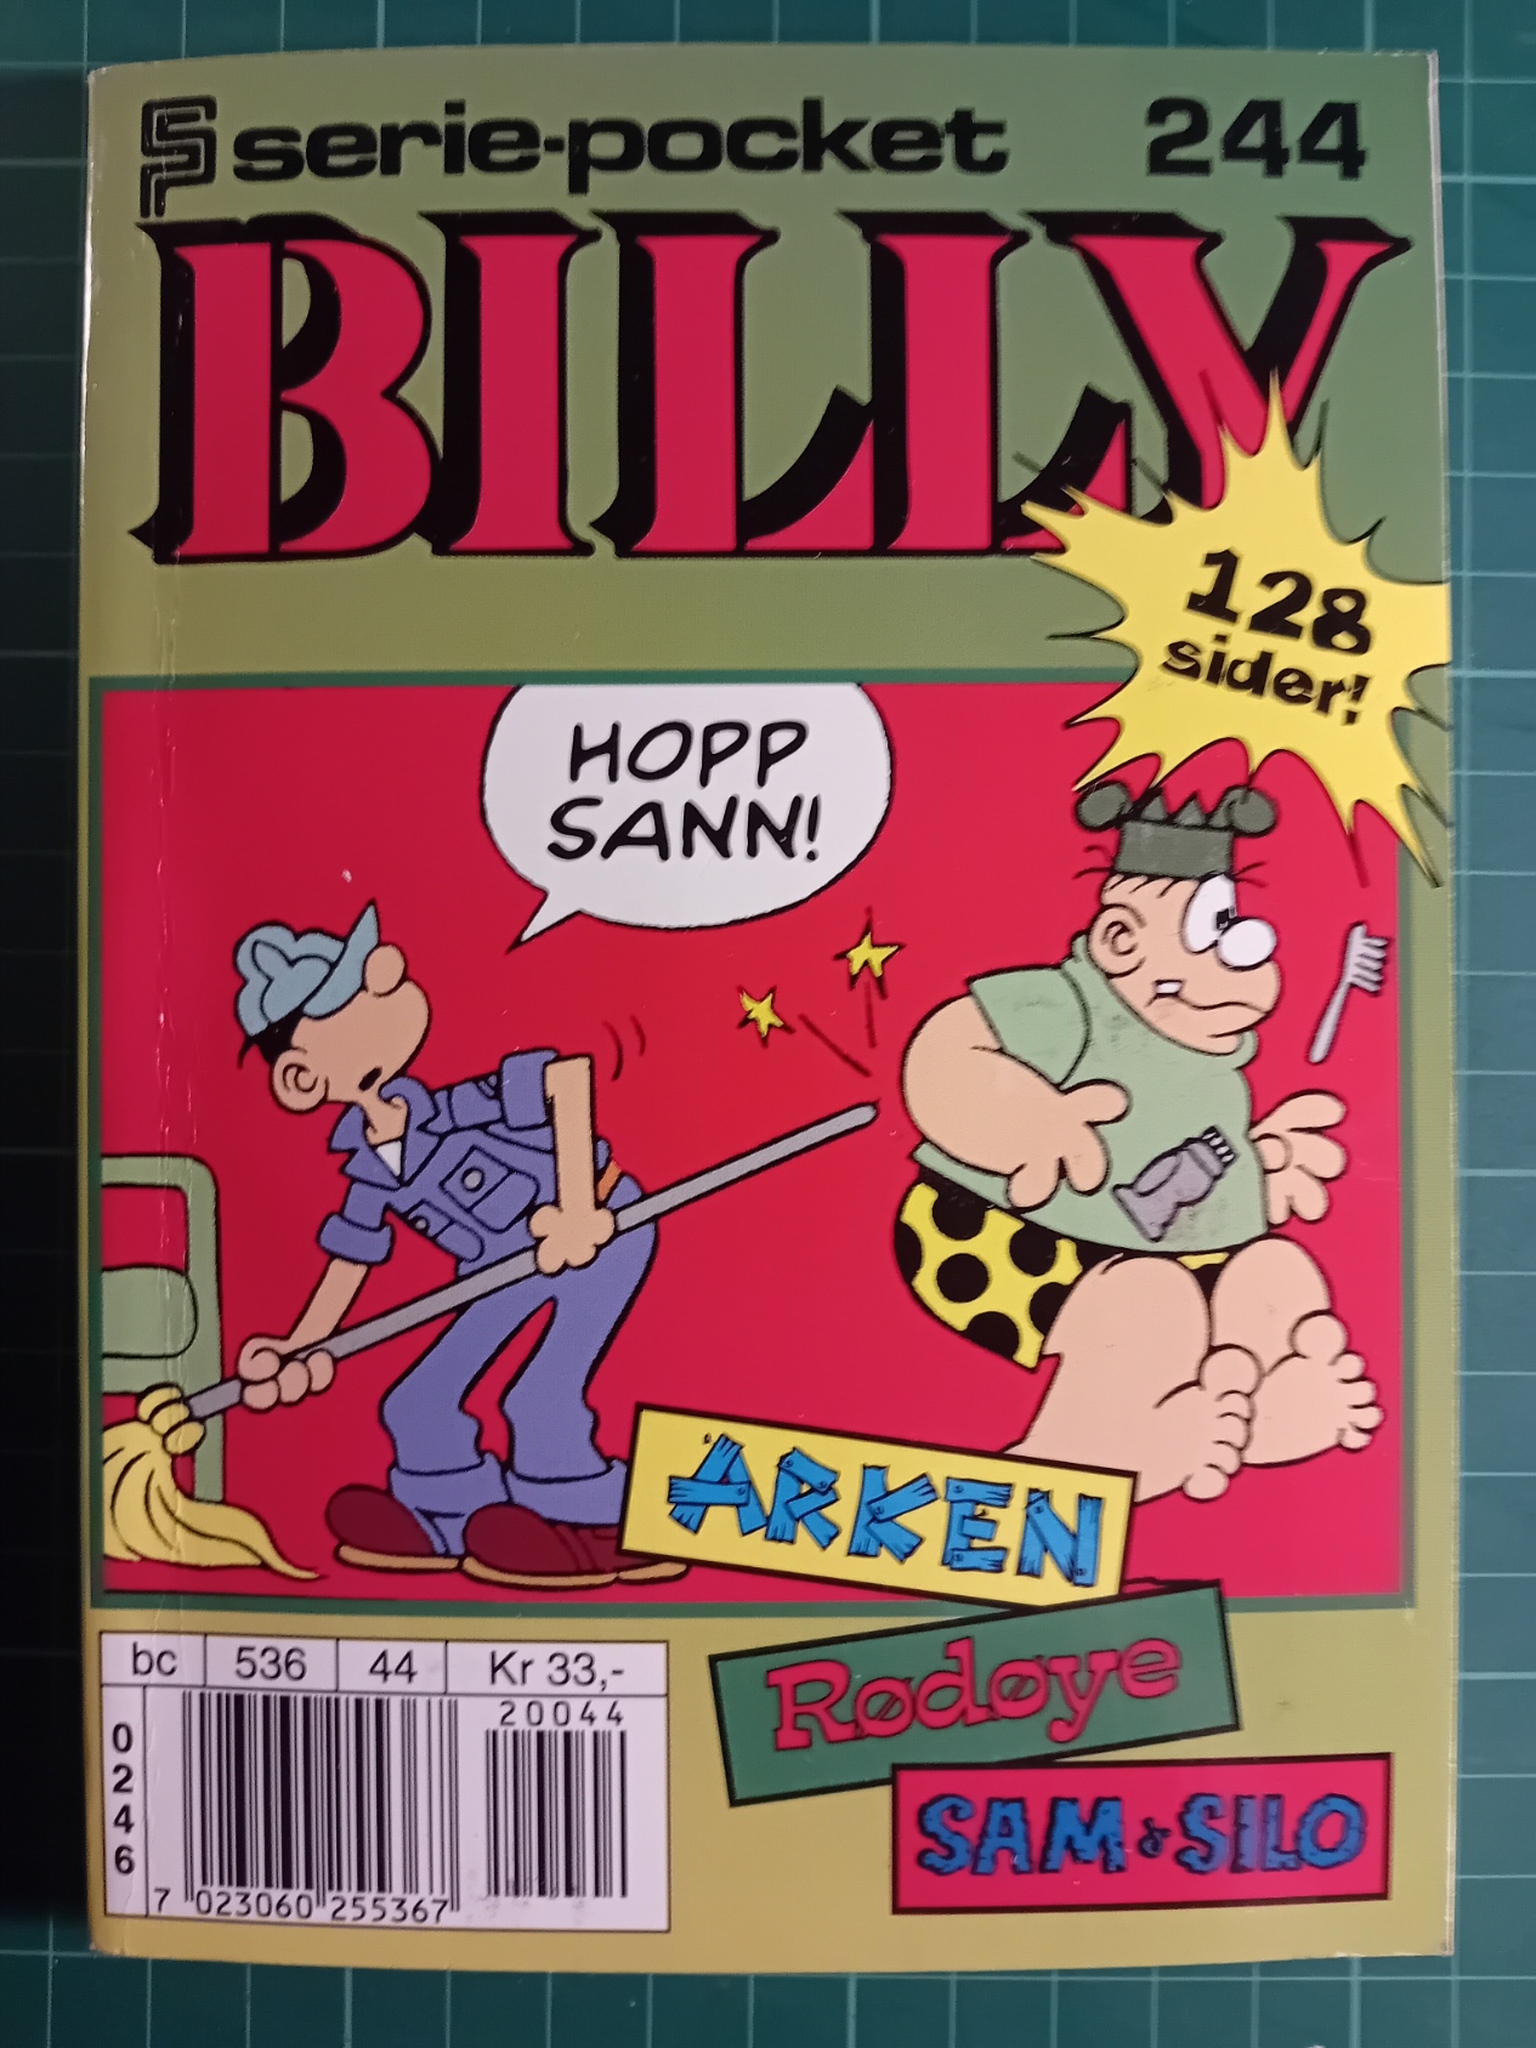 Serie-pocket 244 : Billy